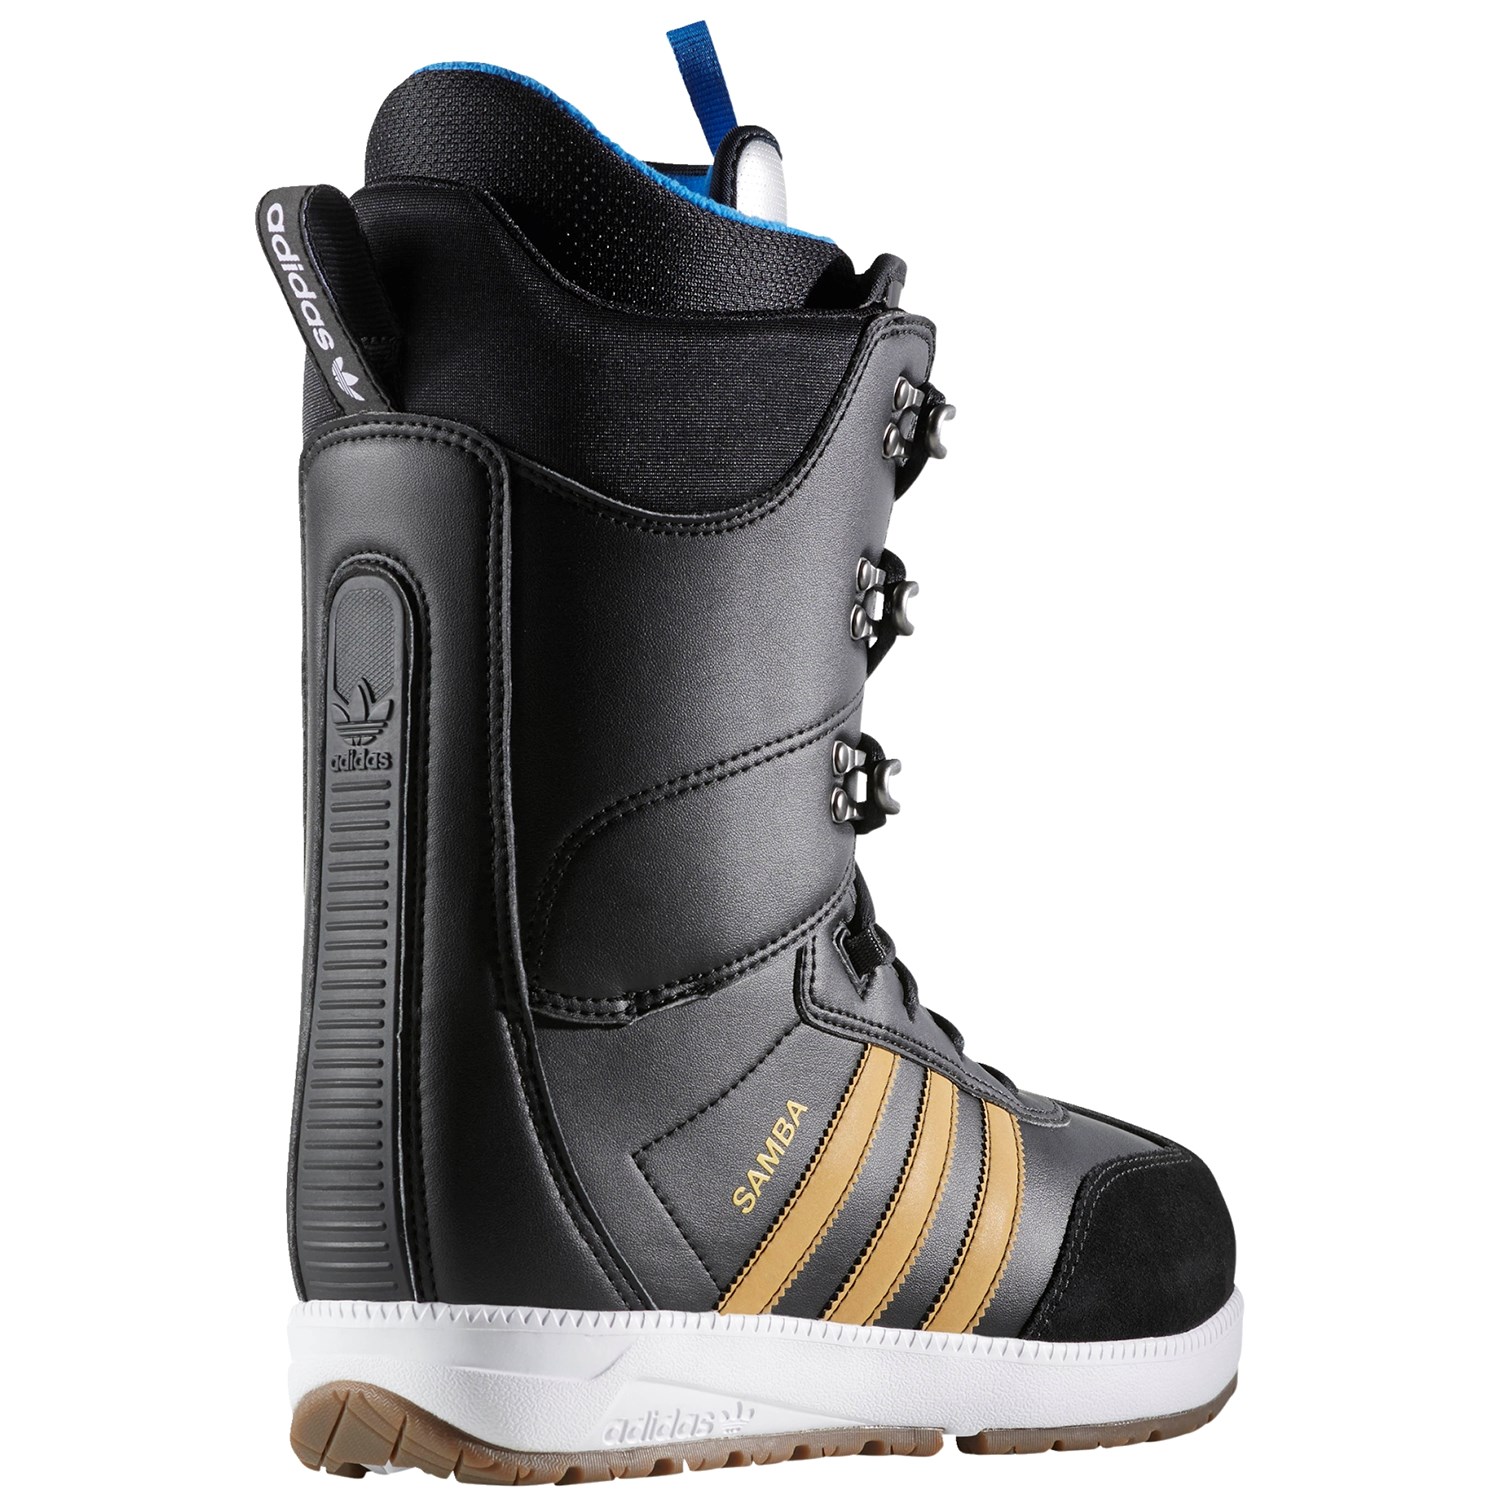 Adidas Samba ADV Snowboard Boots 2018 | evo